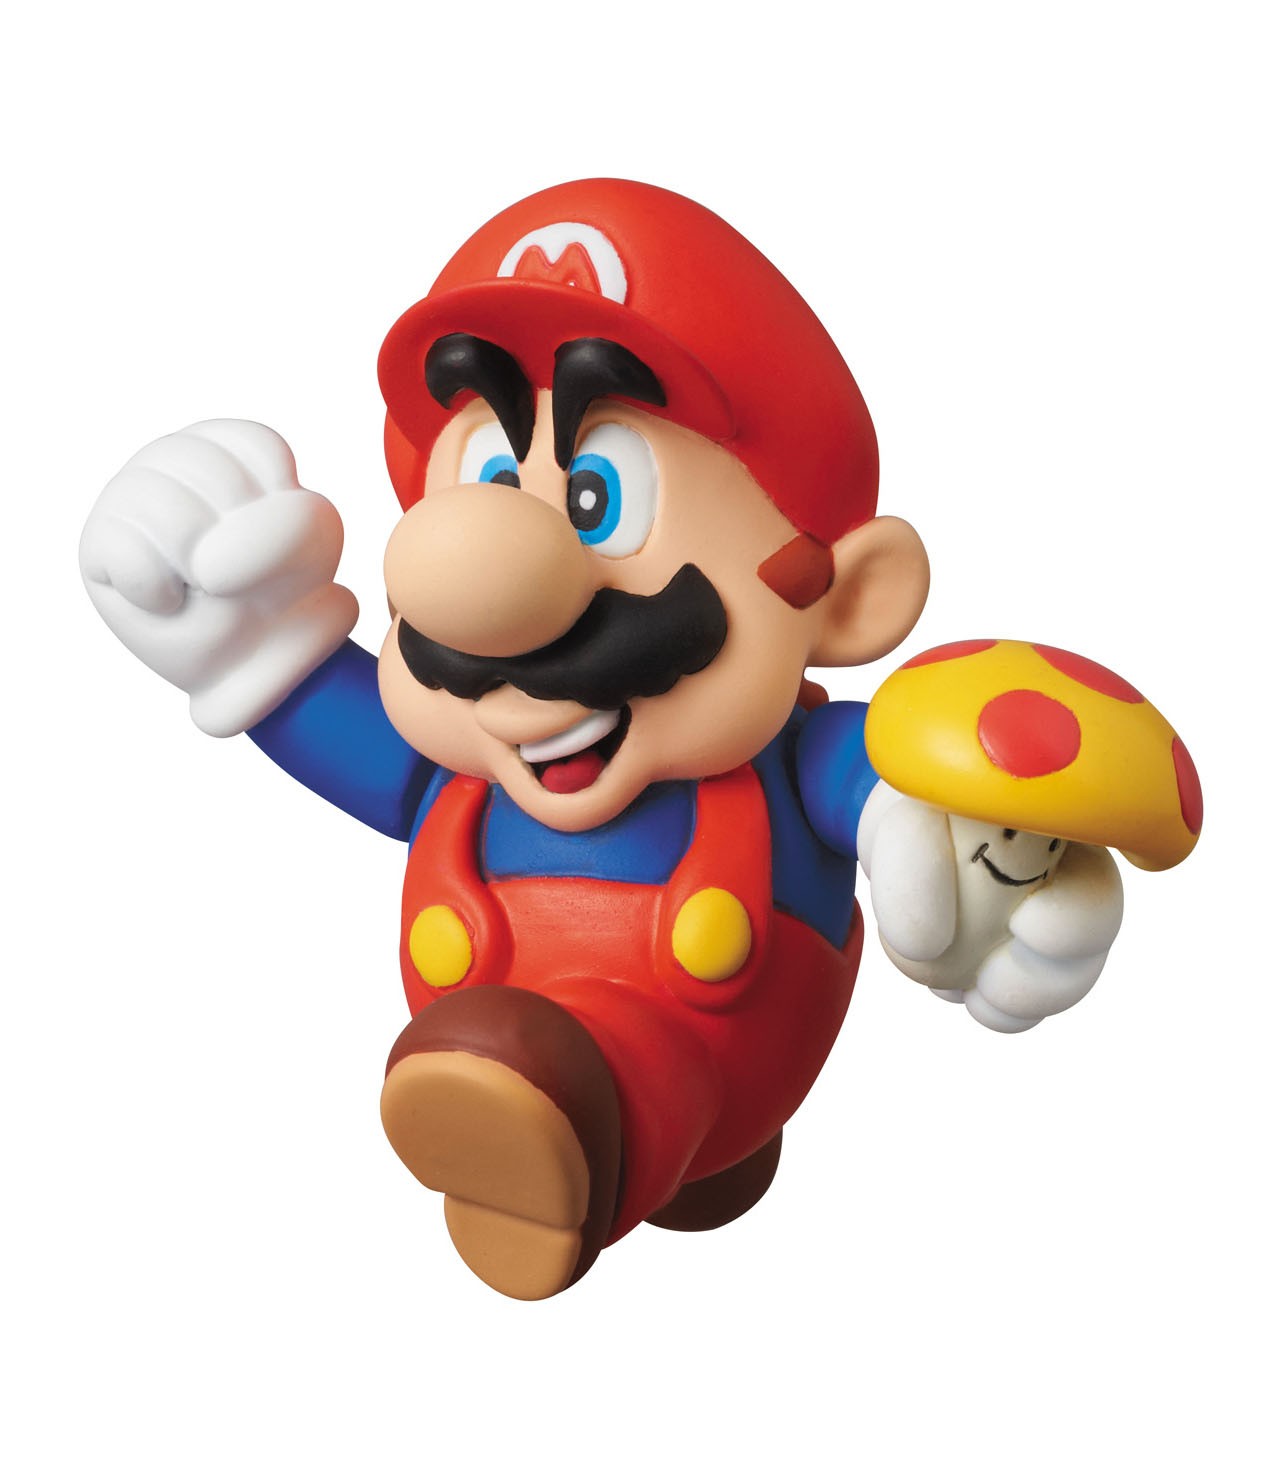 Nintendo - UDF Series 1 Mini Figure - Mario (Super Mario Bros.) 6 cm